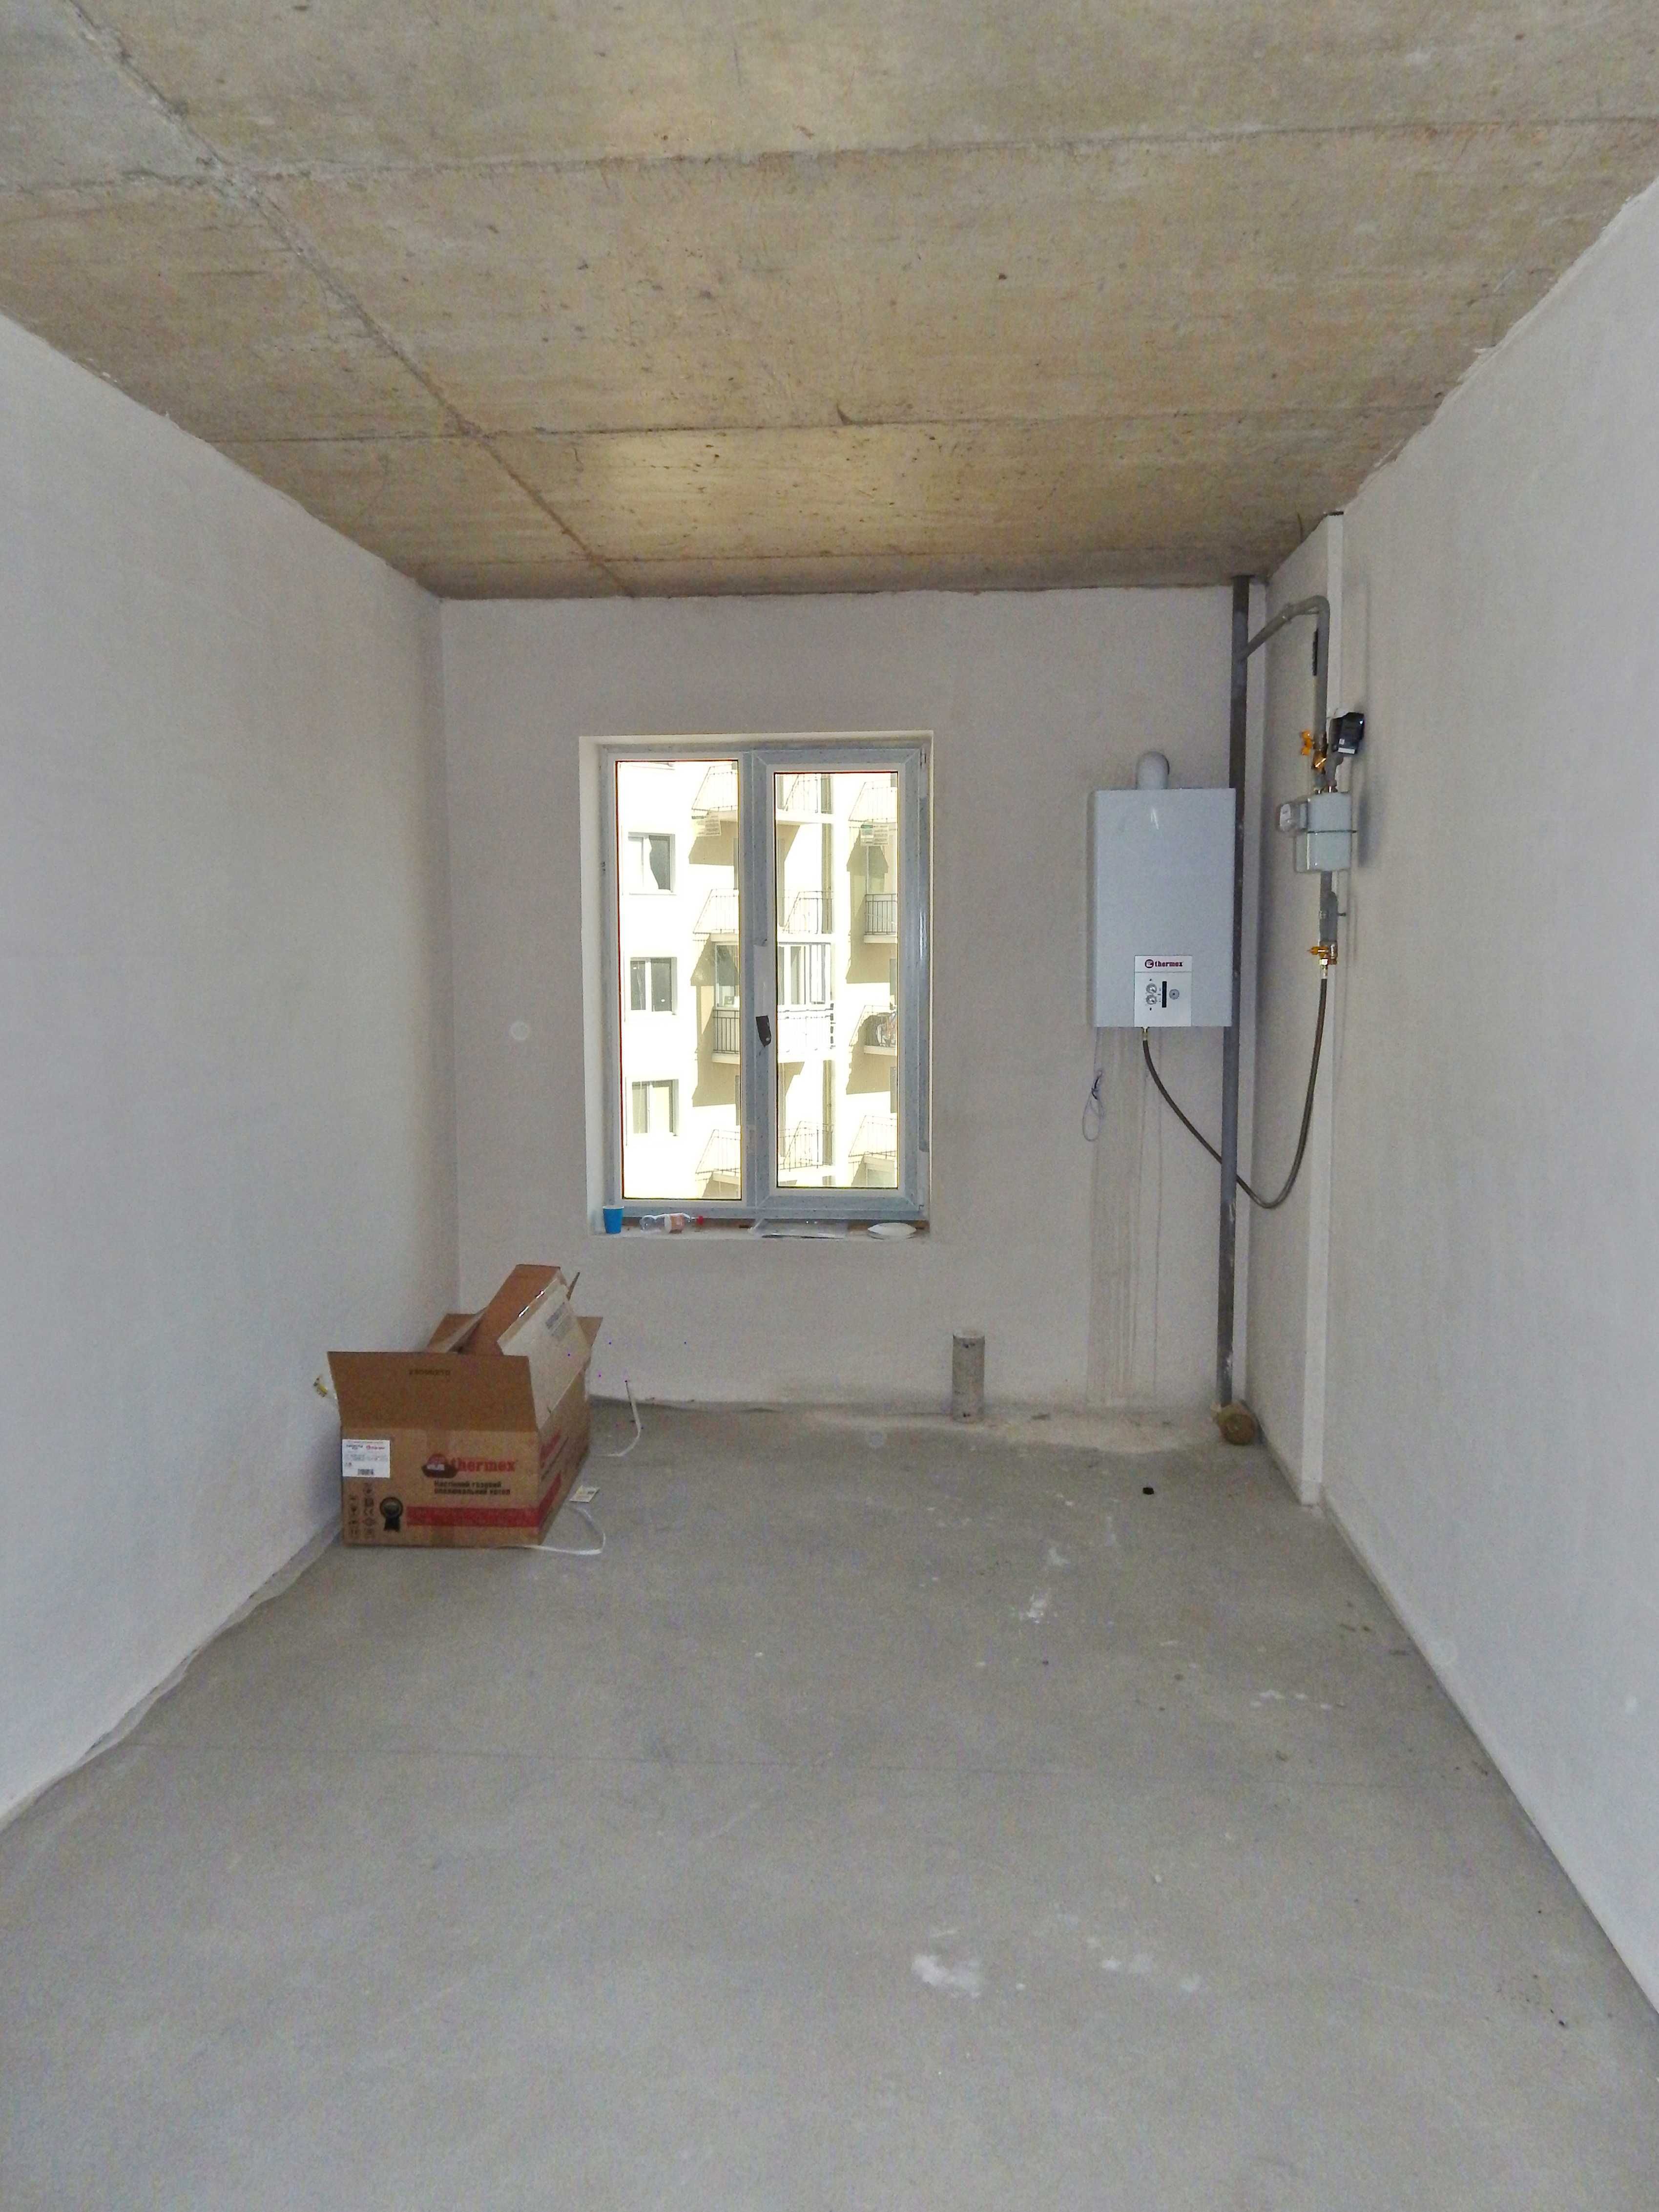 Продам 2-х комнатную квартиру в ЖК Via Roma со своим отоплением